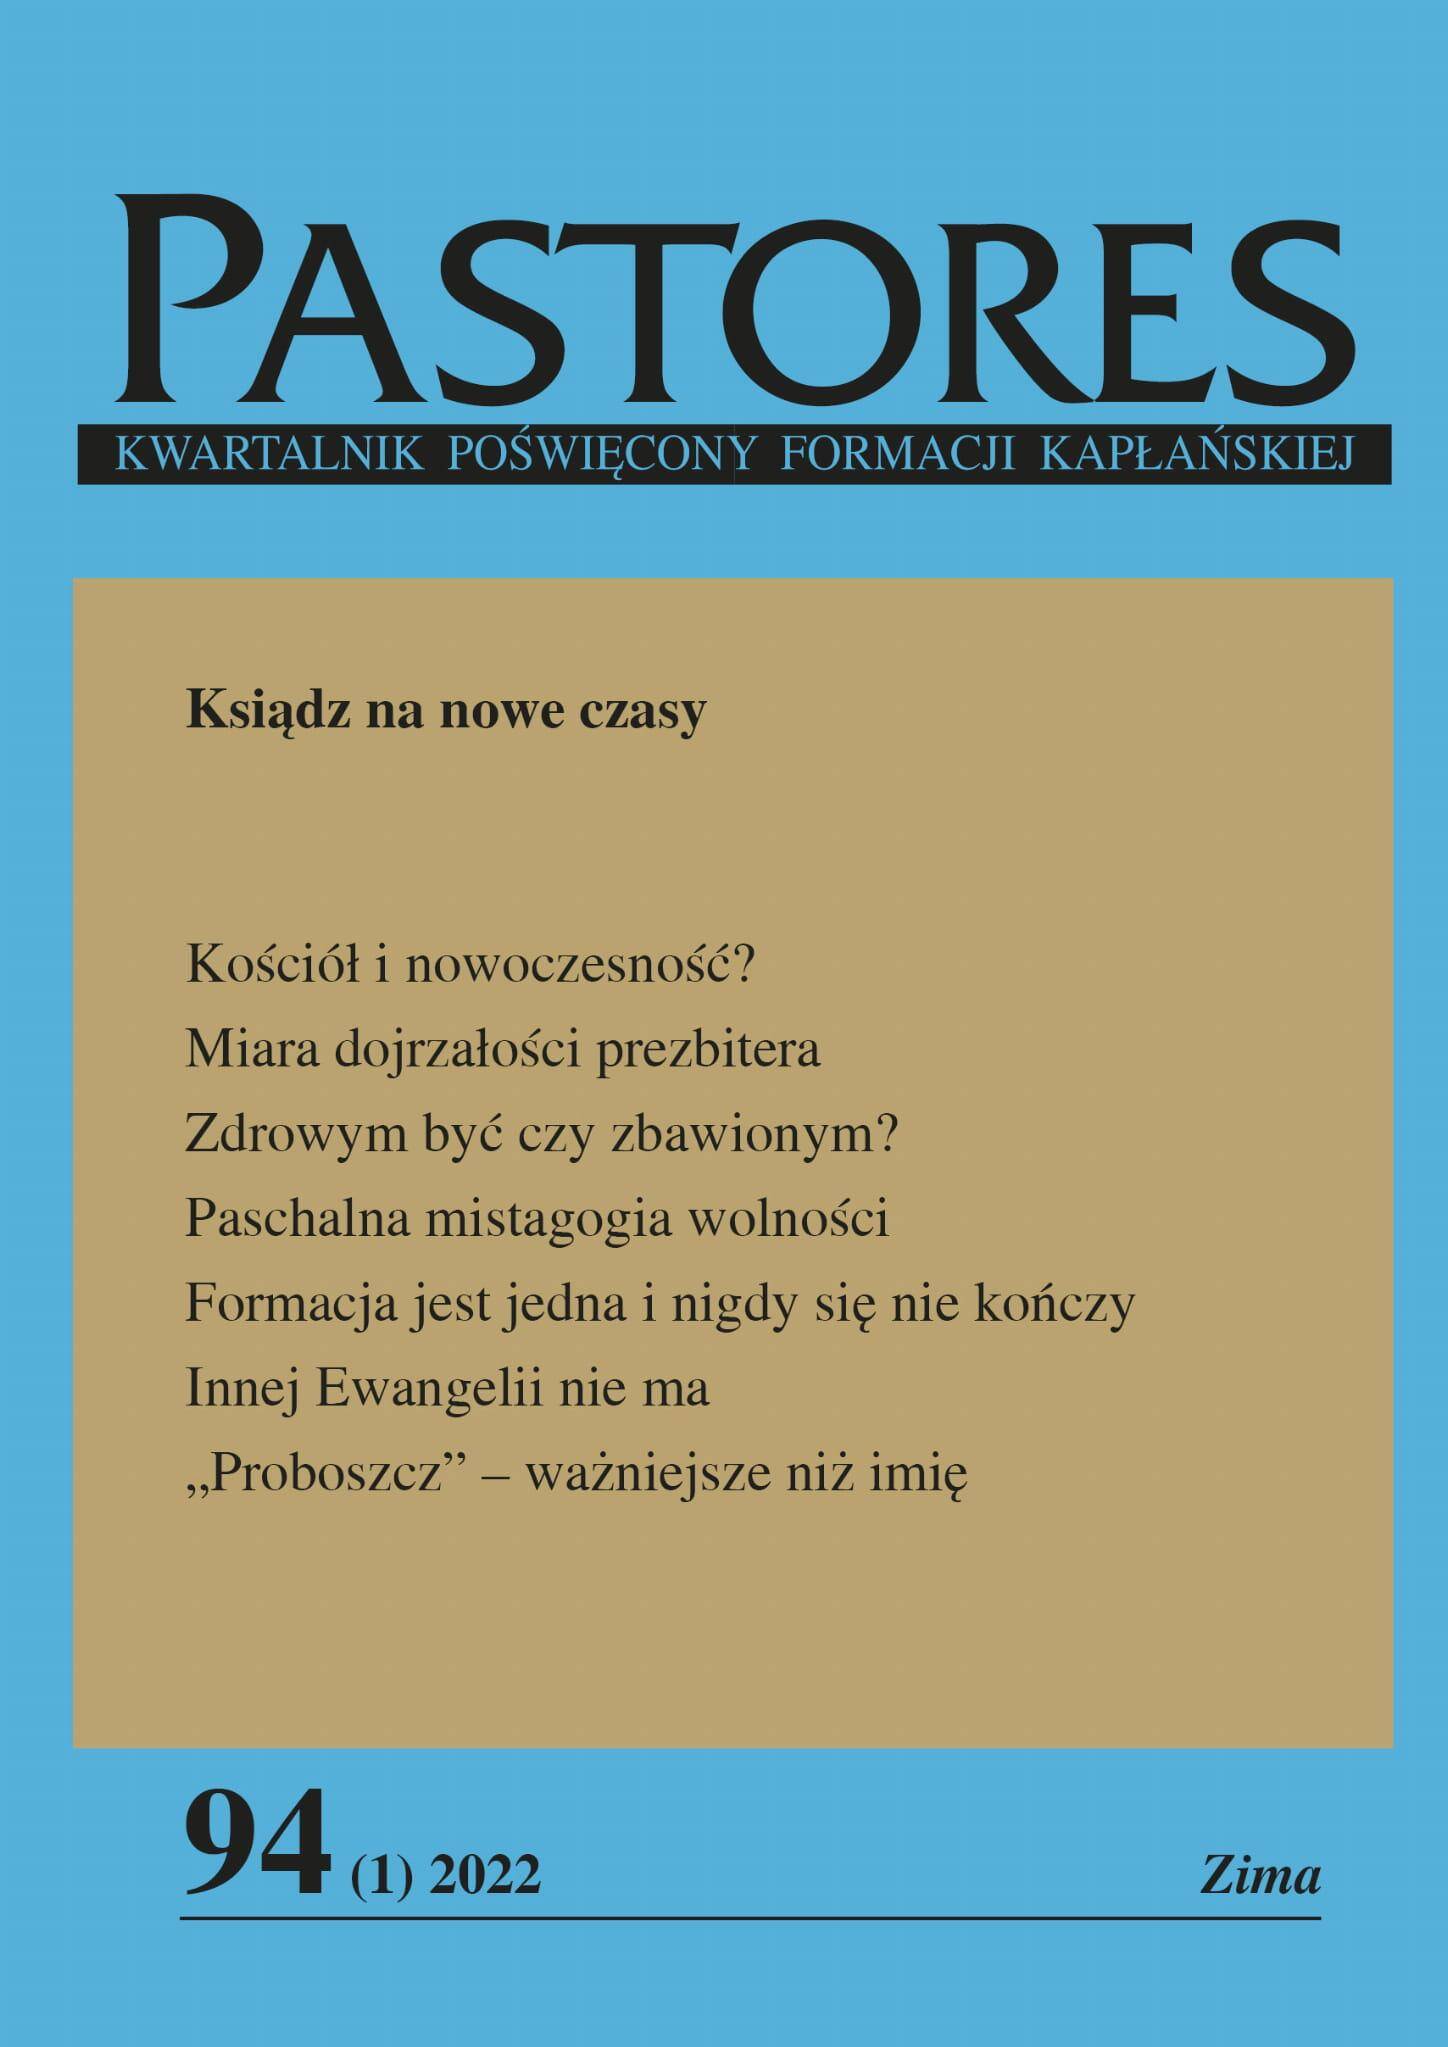 Pastores (czasopismo) 30,00